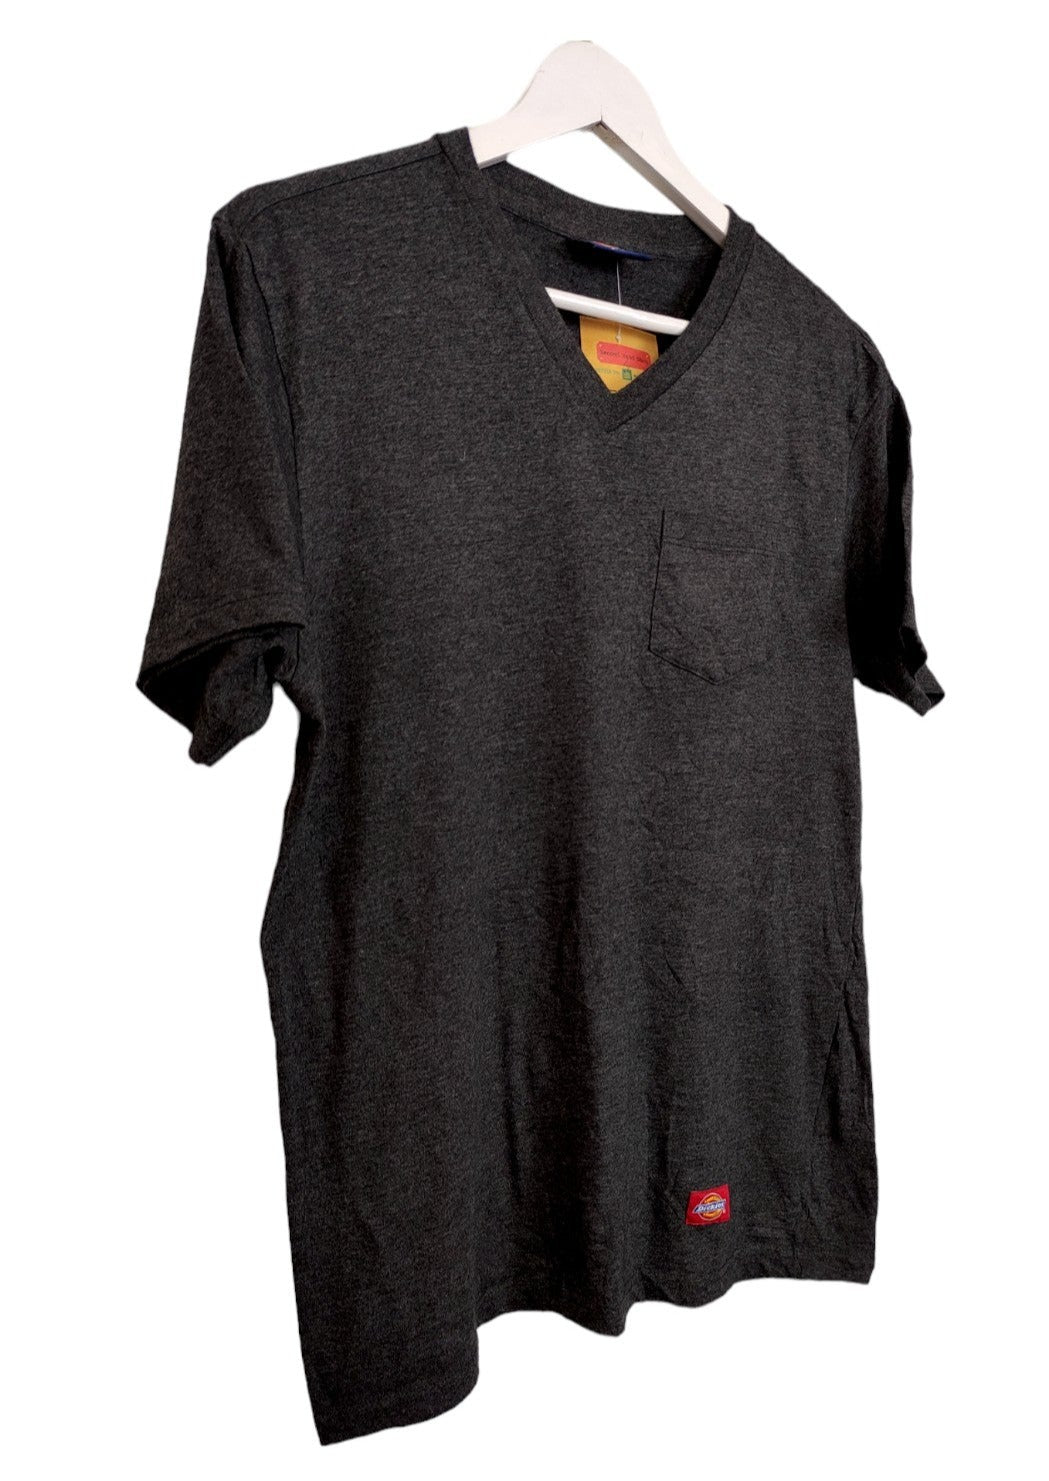 Ανδρική Μπλούζα - T- Shirt DICKIES σε Σκούρο Γκρι χρώμα (XL)